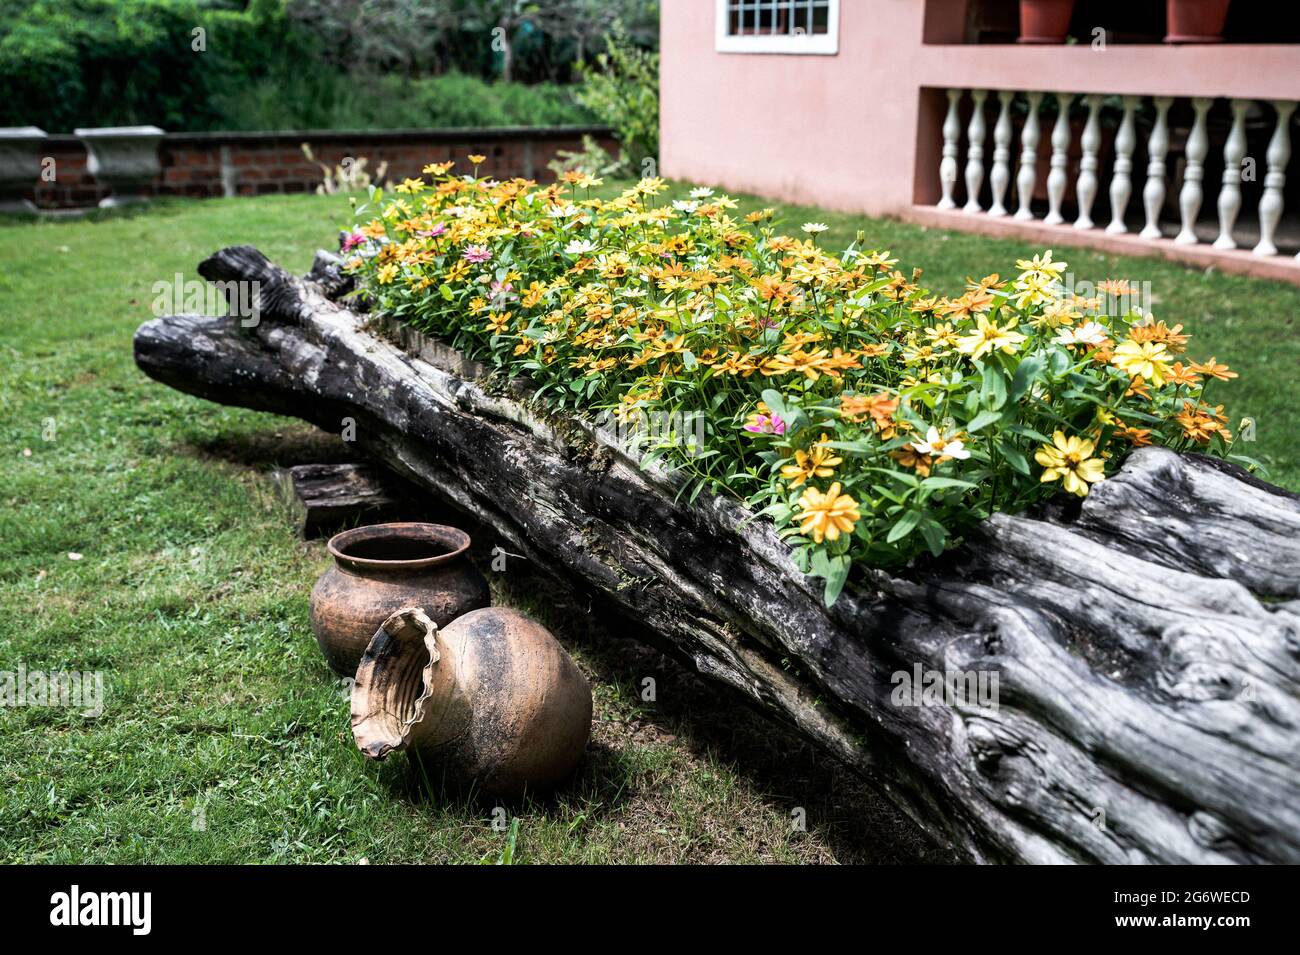 Schönes buntes Blumenbeet vor einem Haus, in einem Baumstamm in einem Garten mit einigen alten Tontöpfen als Verzierungen angeordnet. Stockfoto